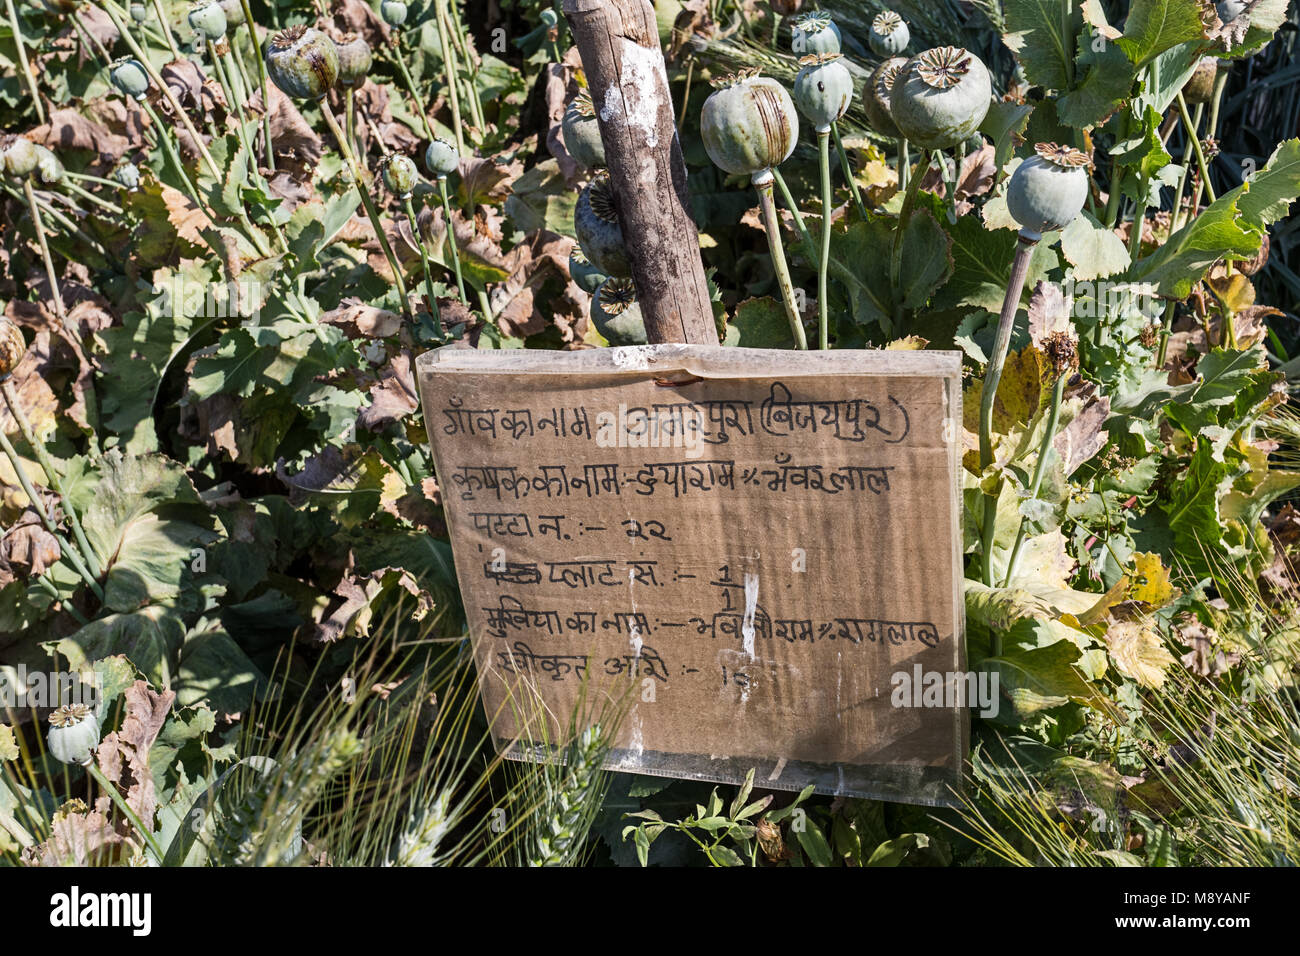 Le pavot en milieu rural de plus en plus Nimbahera - Rajasthan, Inde Banque D'Images